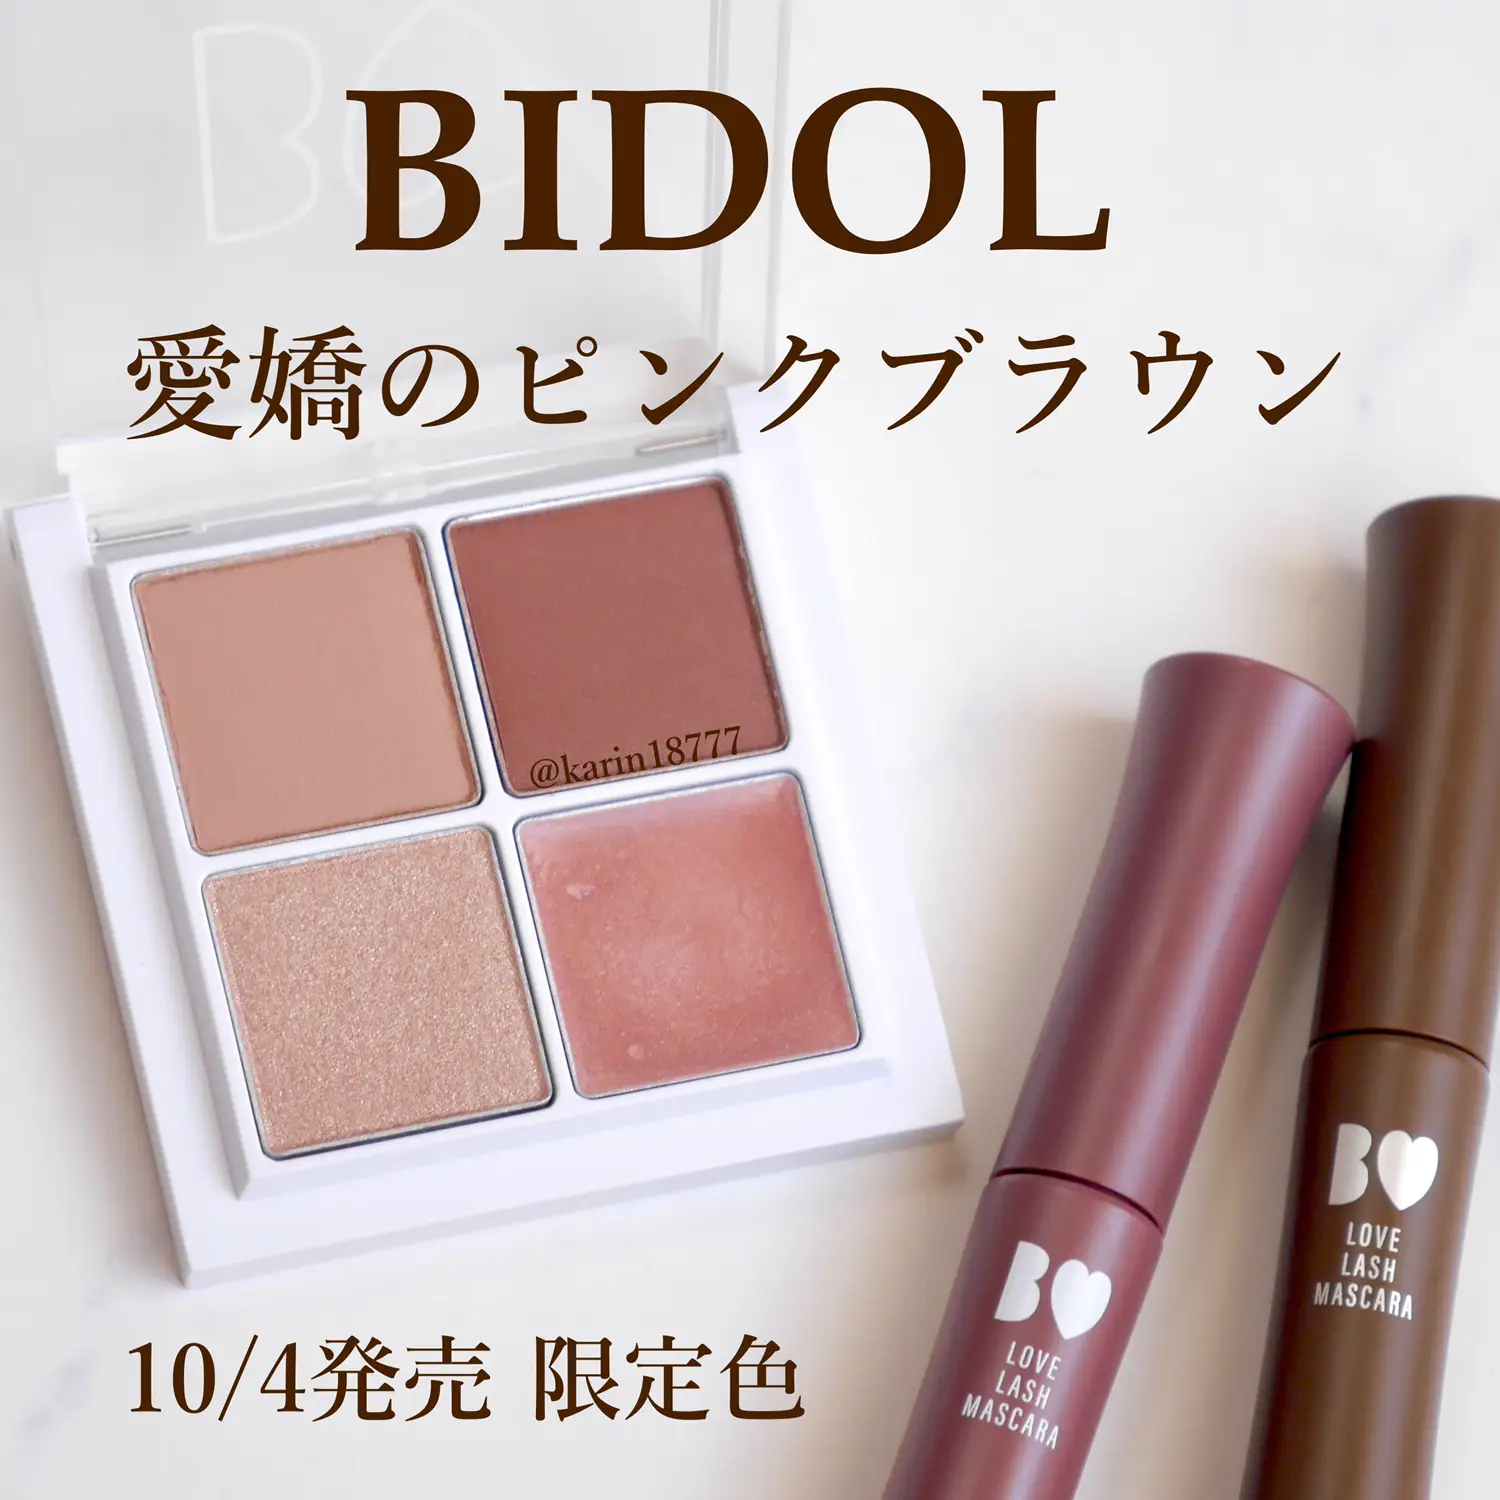 BIDOL限定色💘愛嬌のピンクブラウン | 花鈴が投稿したフォトブック